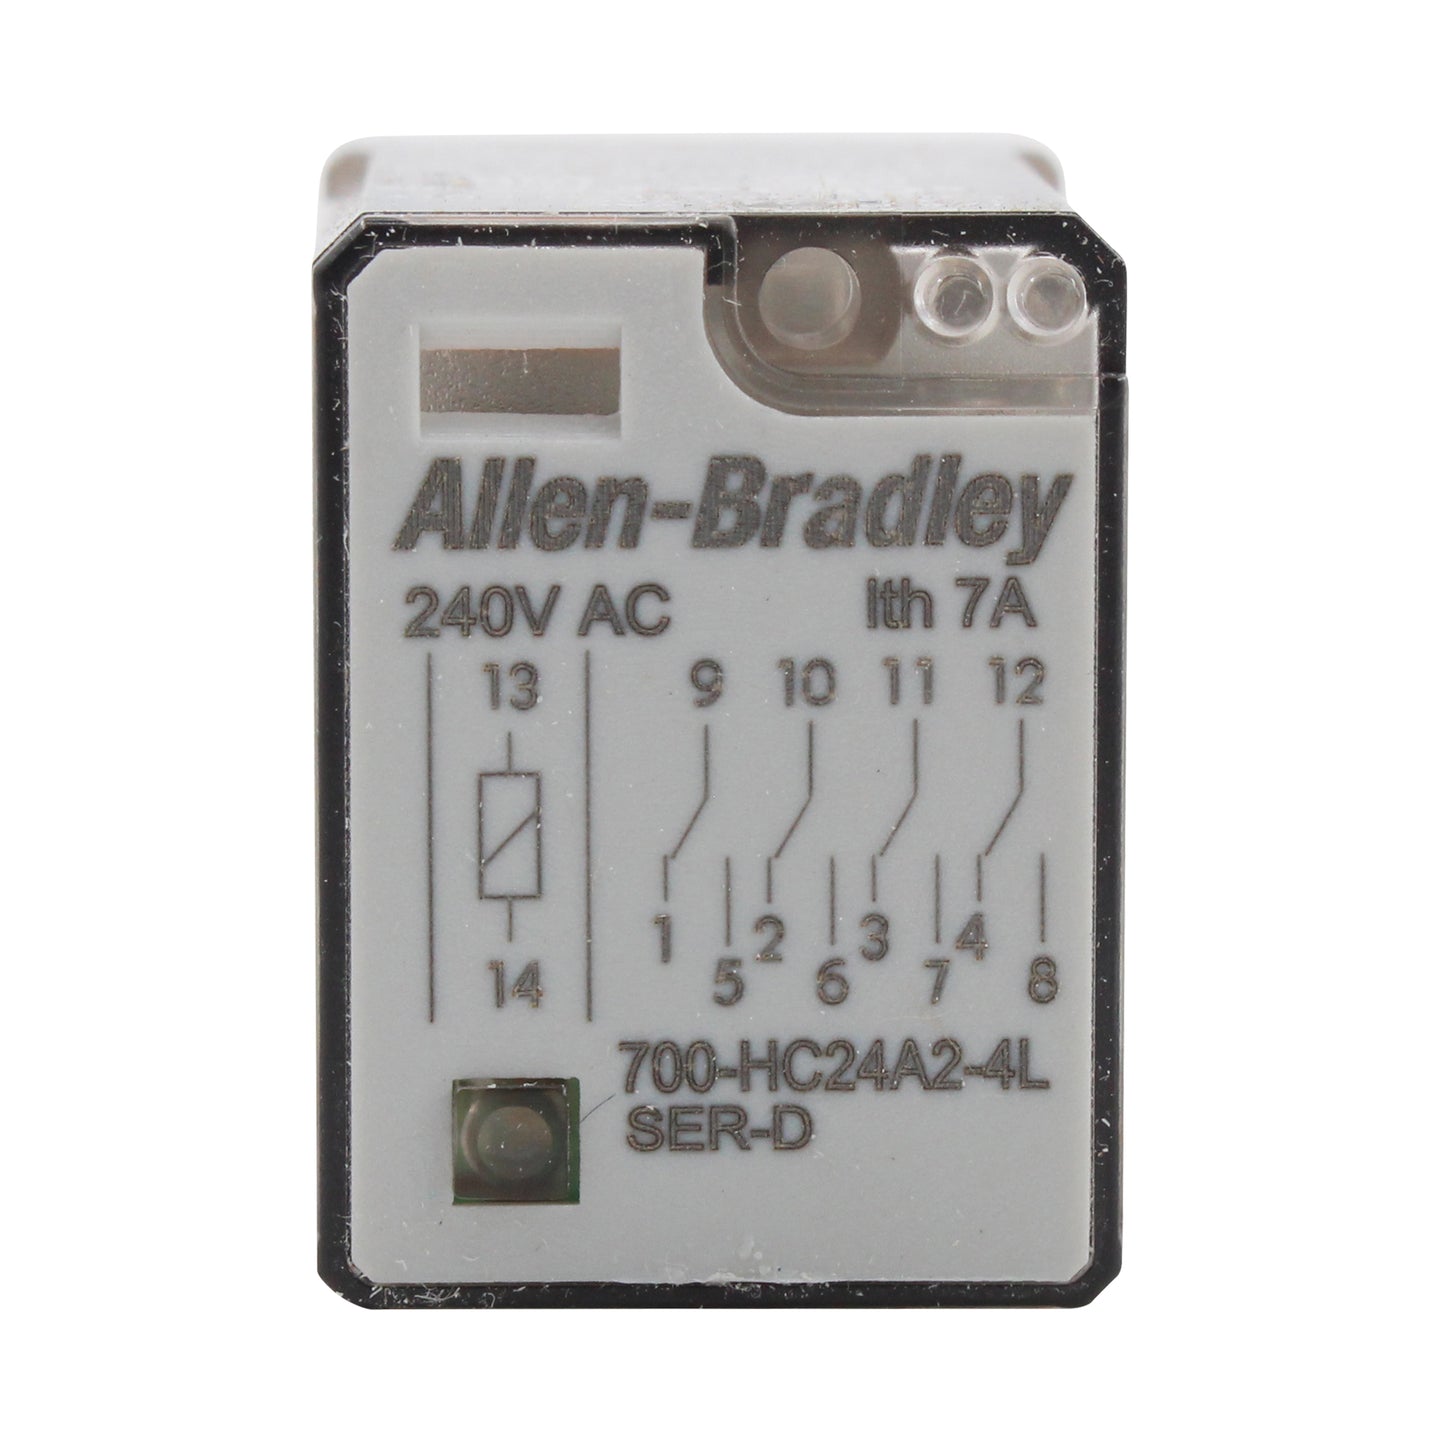 Allen Bradley Group 700-HC24A2-4L